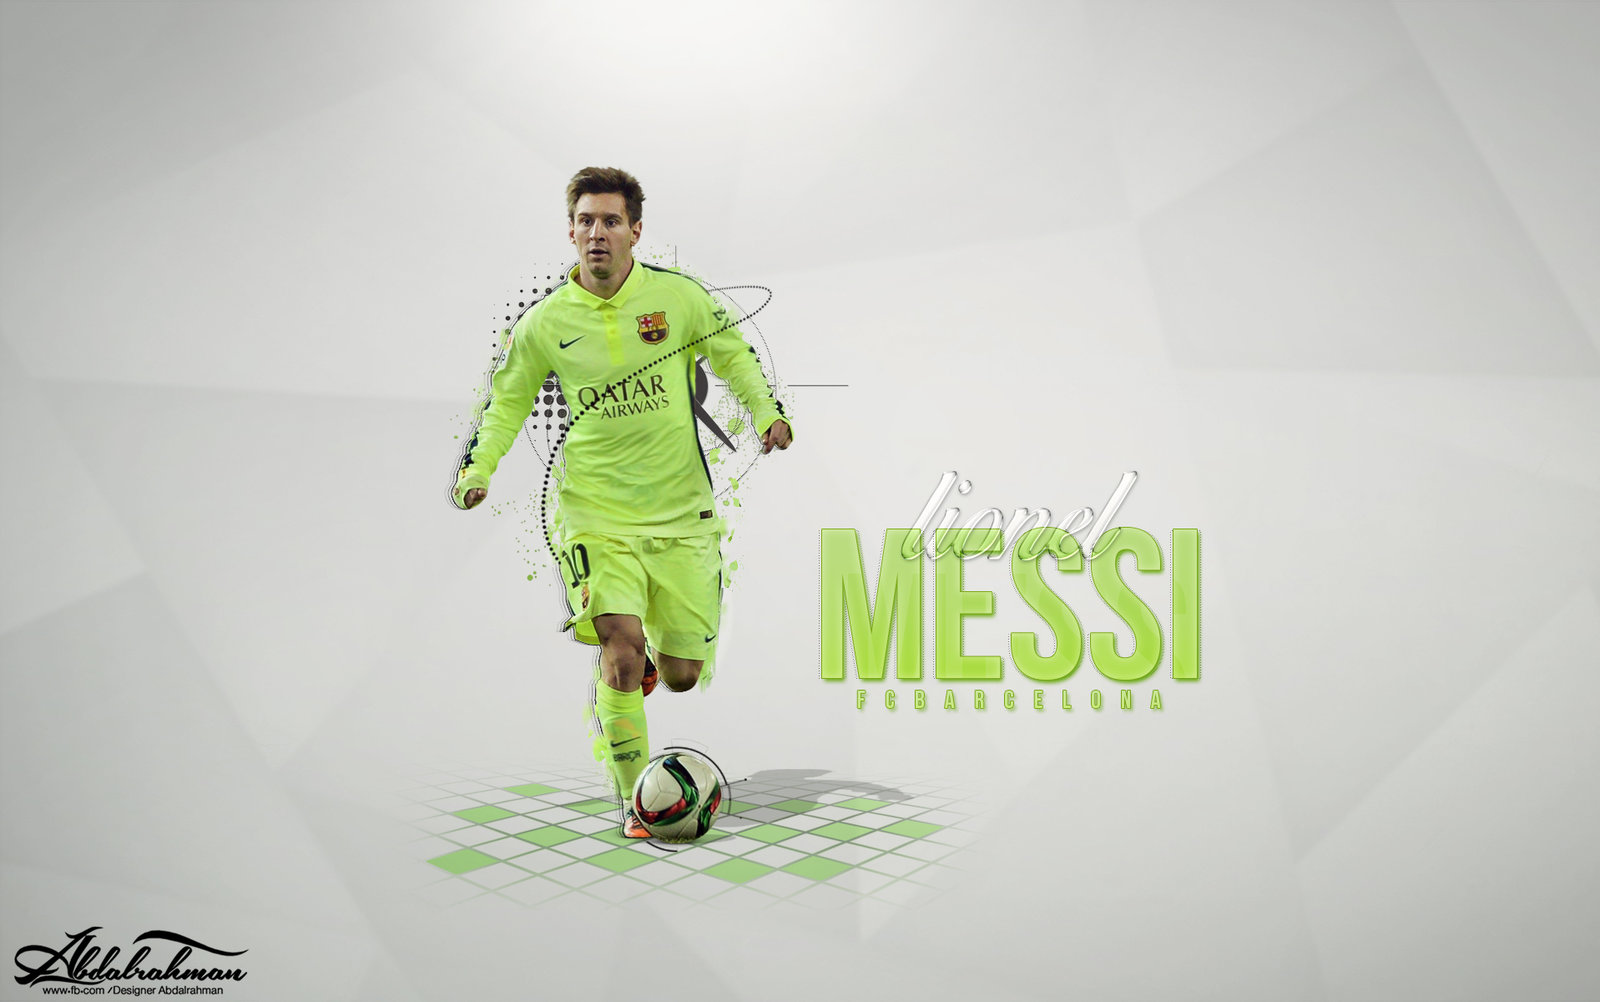 Wallpaper Lionel Messi By Designer Abdalrahman